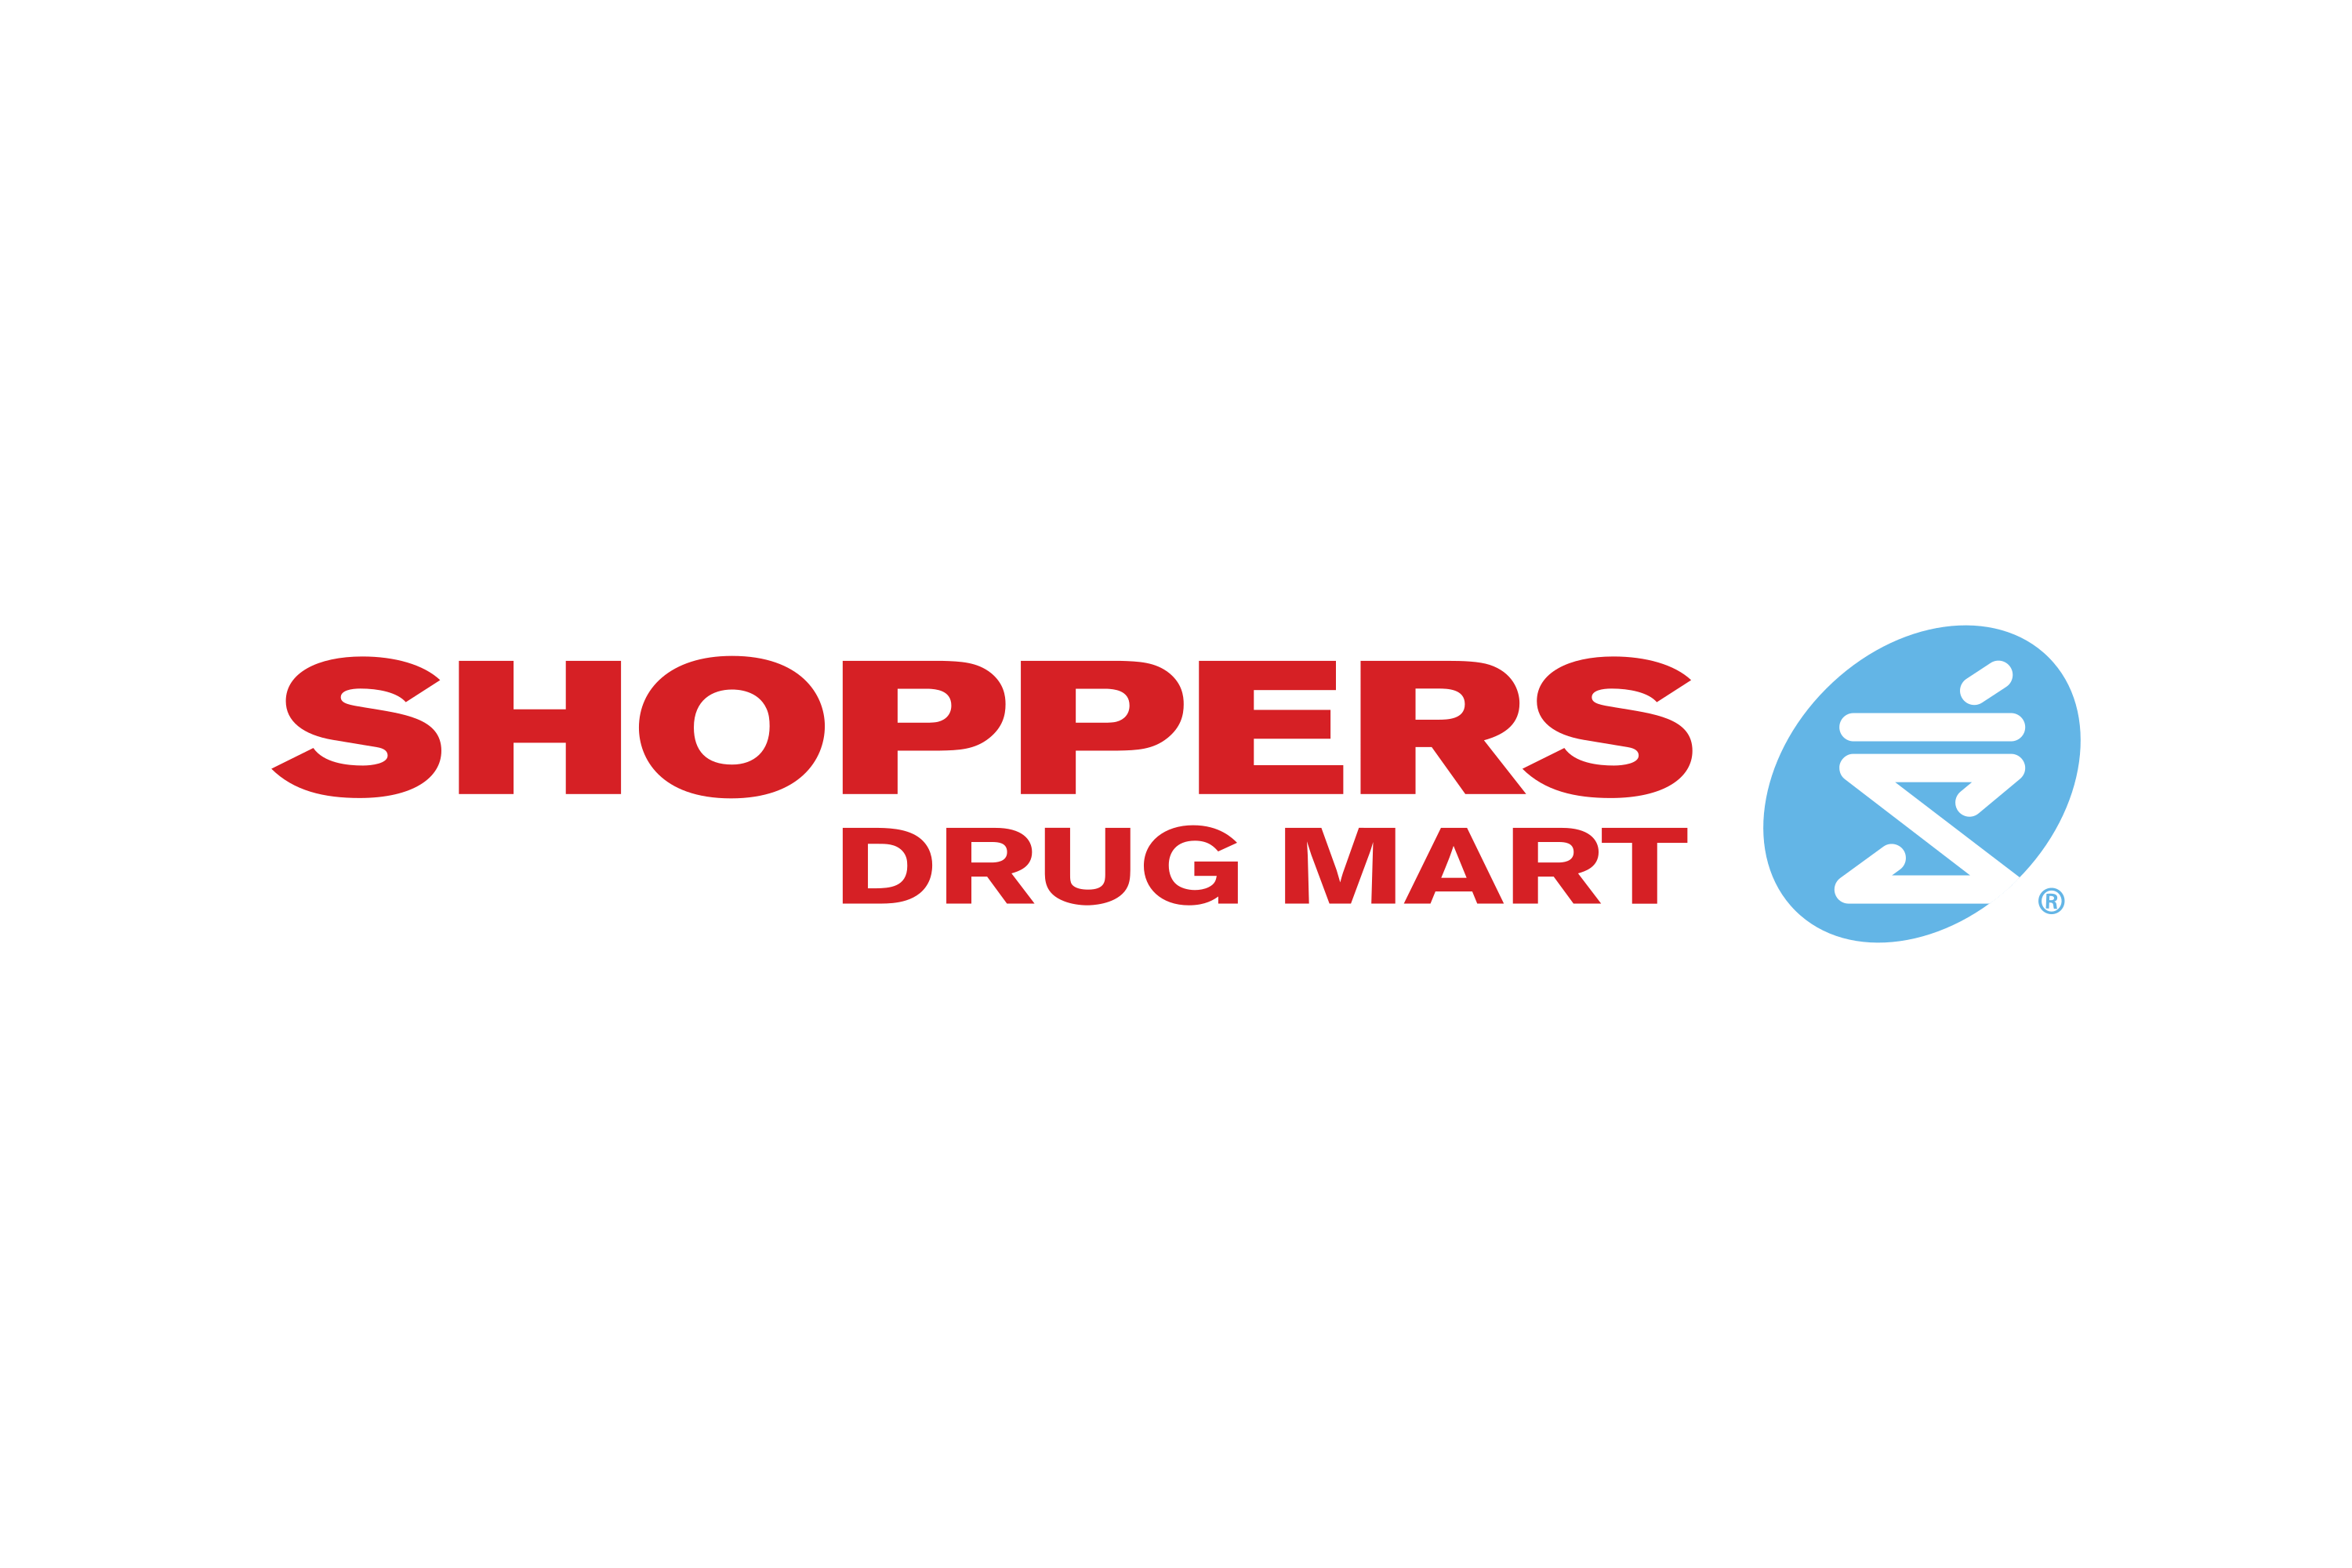 Download Shoppers Drug Mart (Pharmaprix) Logo in SVG Vector or PNG File